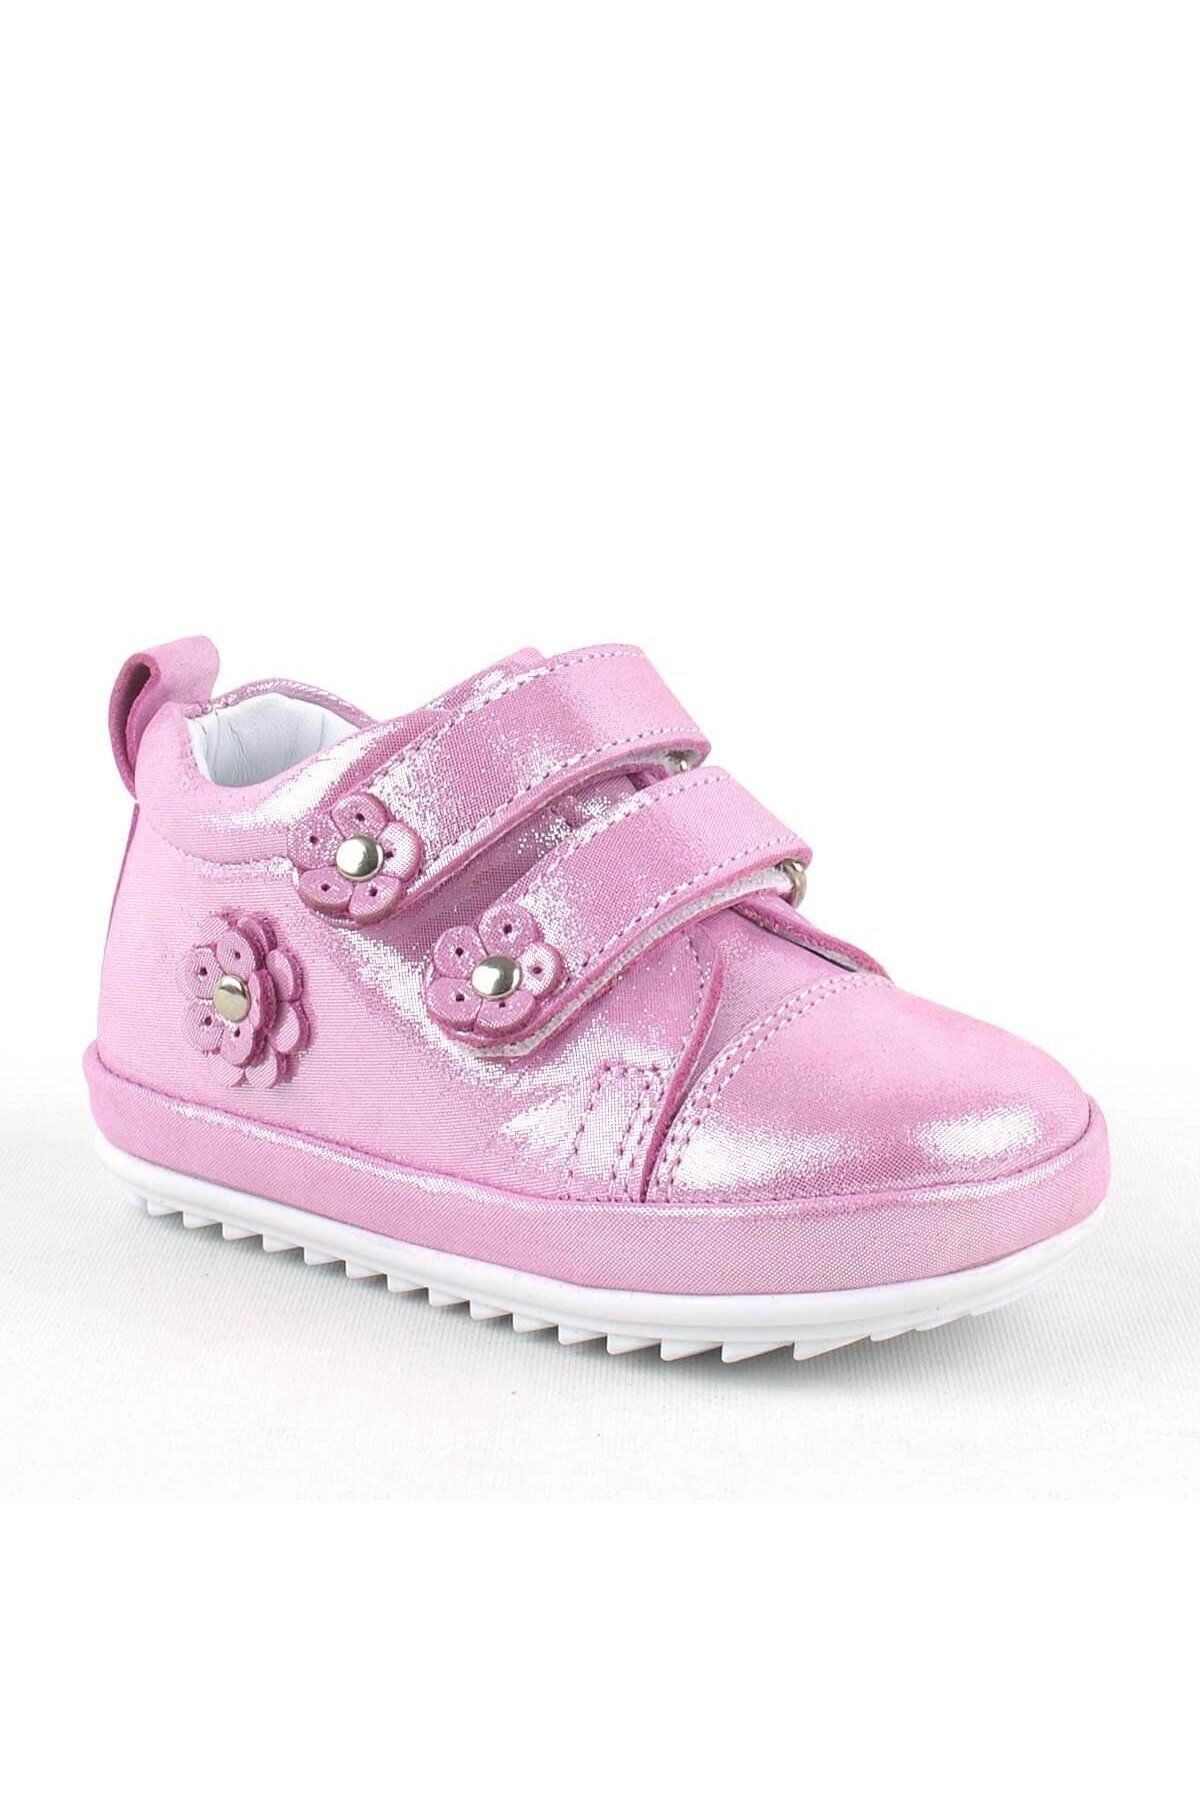 Rakerplus Limpo Hakiki Deri Pembe Anatomik Kız Bebek Ilk Adım Ayakkabısı